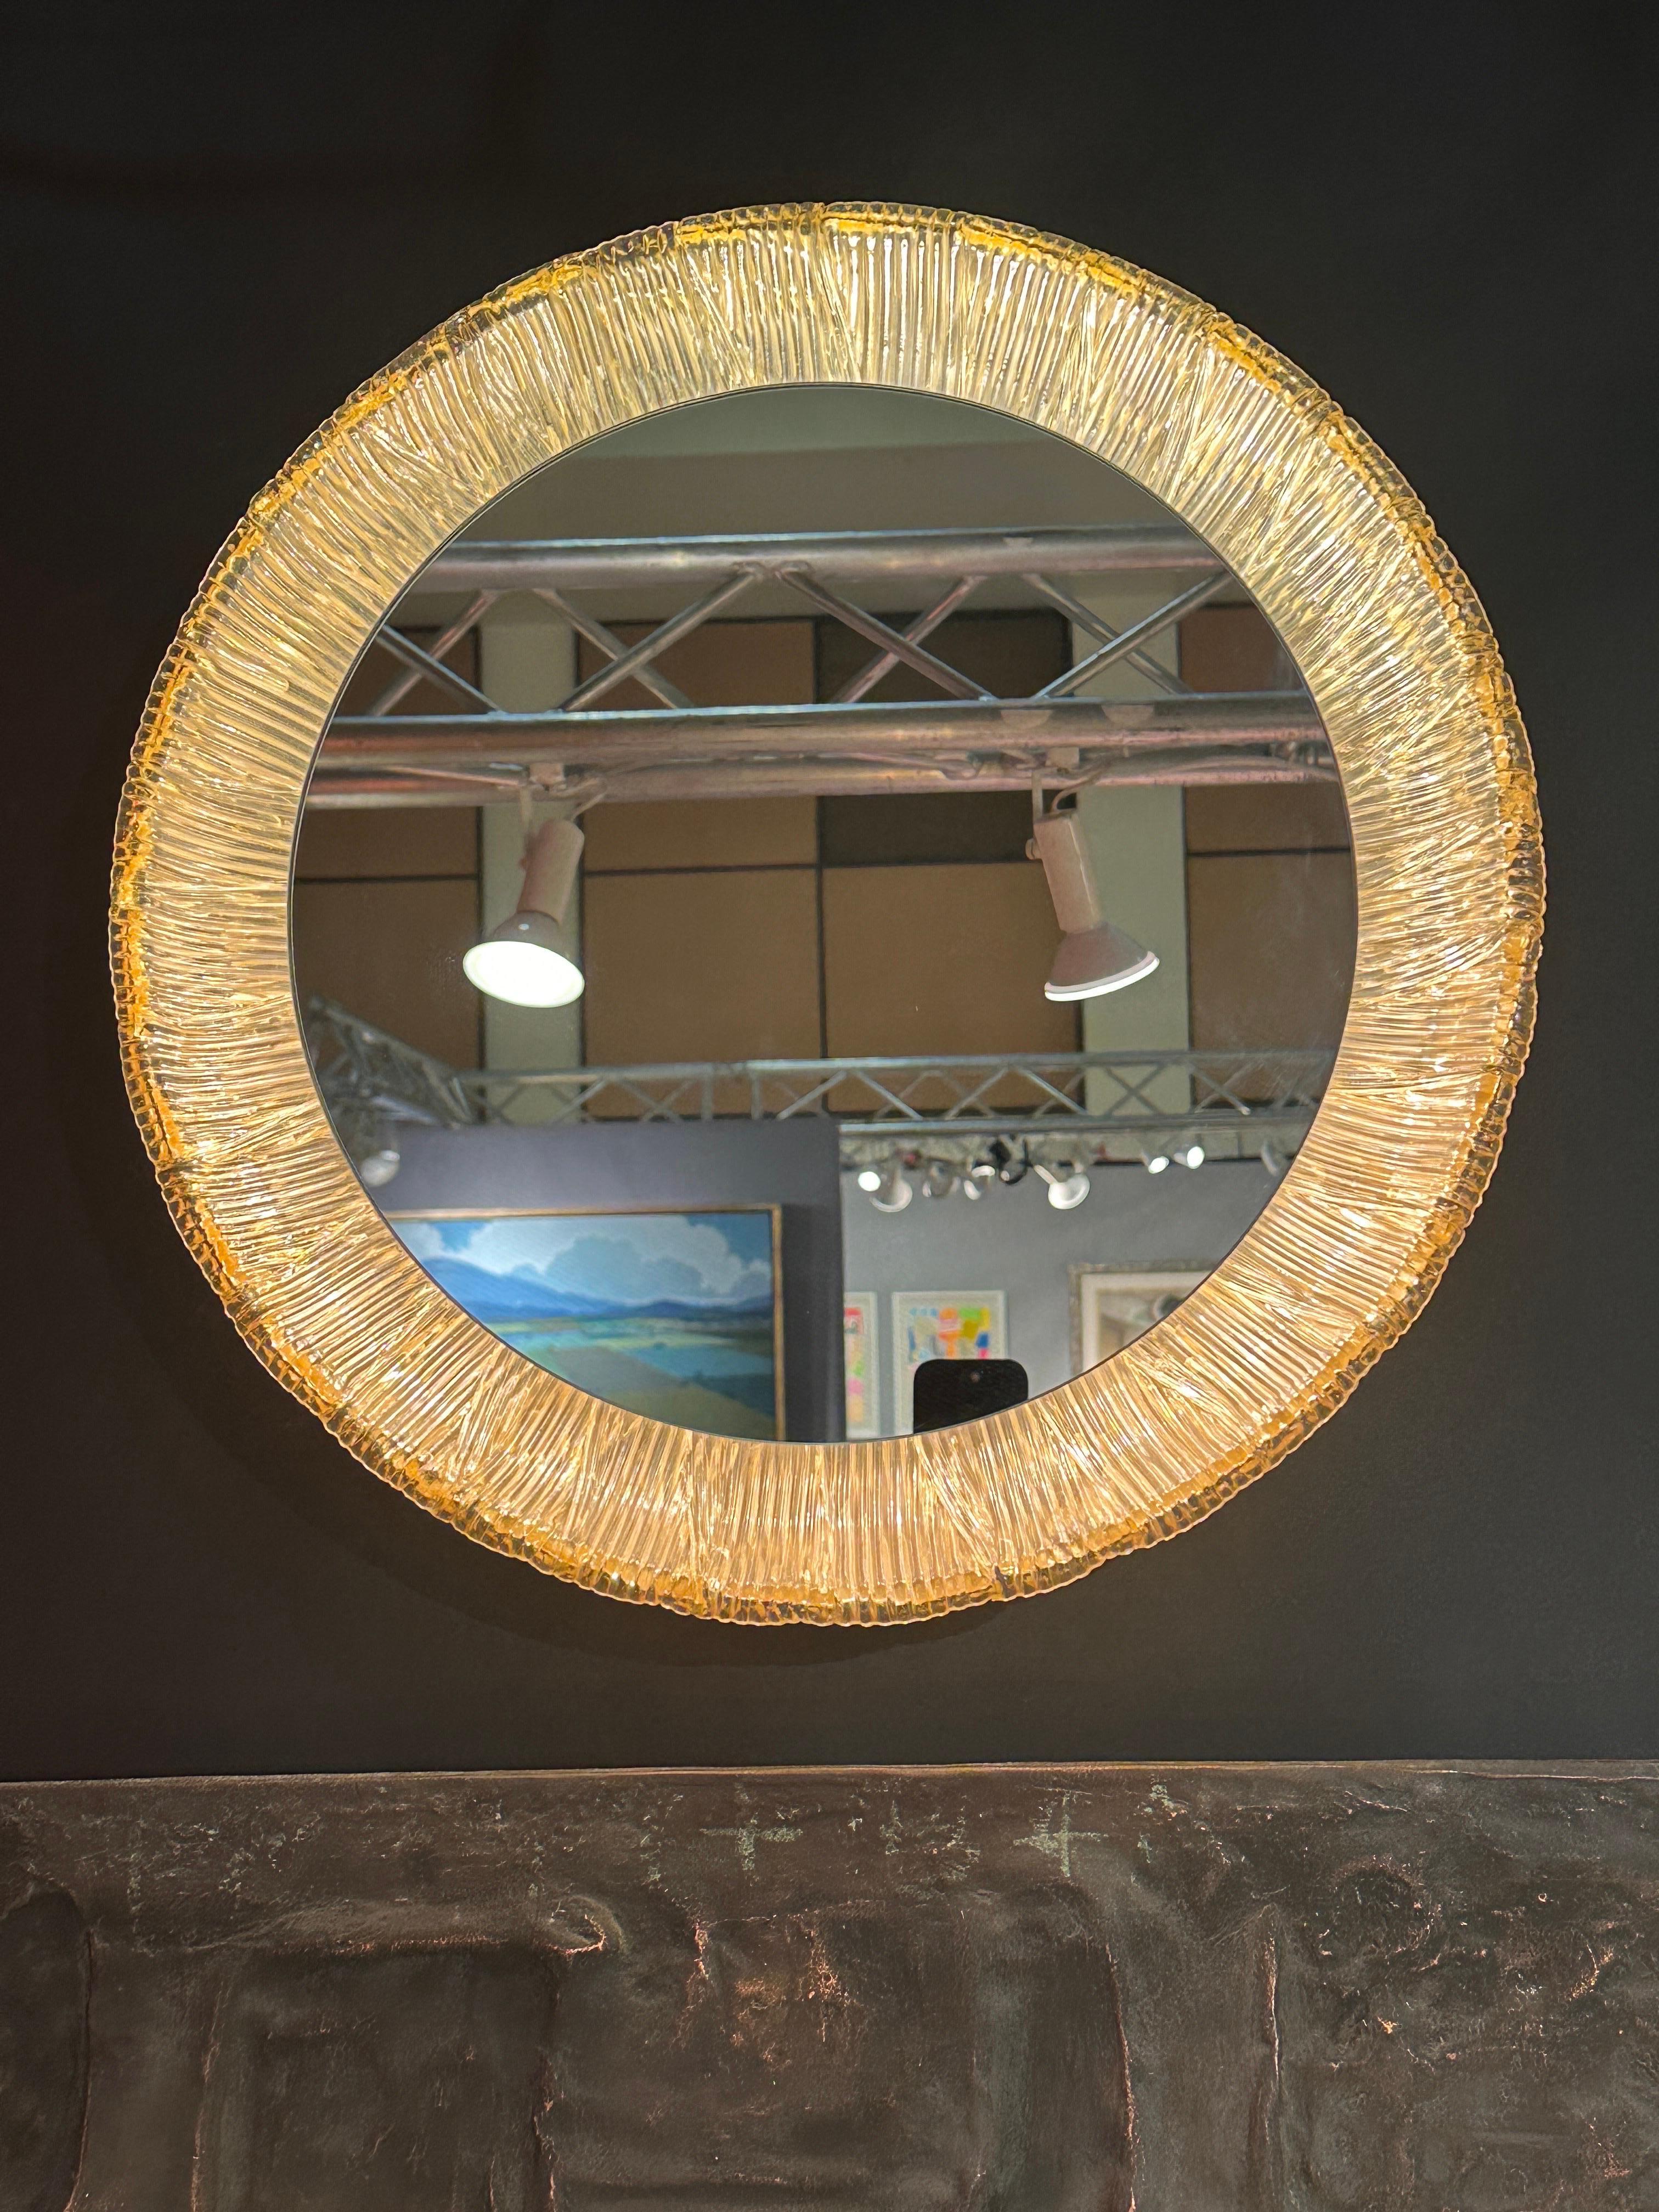 Beleuchteter Acryl-Kosmetikspiegel, hergestellt in Deutschland in den 1970er Jahren
Der einzige Spiegel hat einen Durchmesser von 14